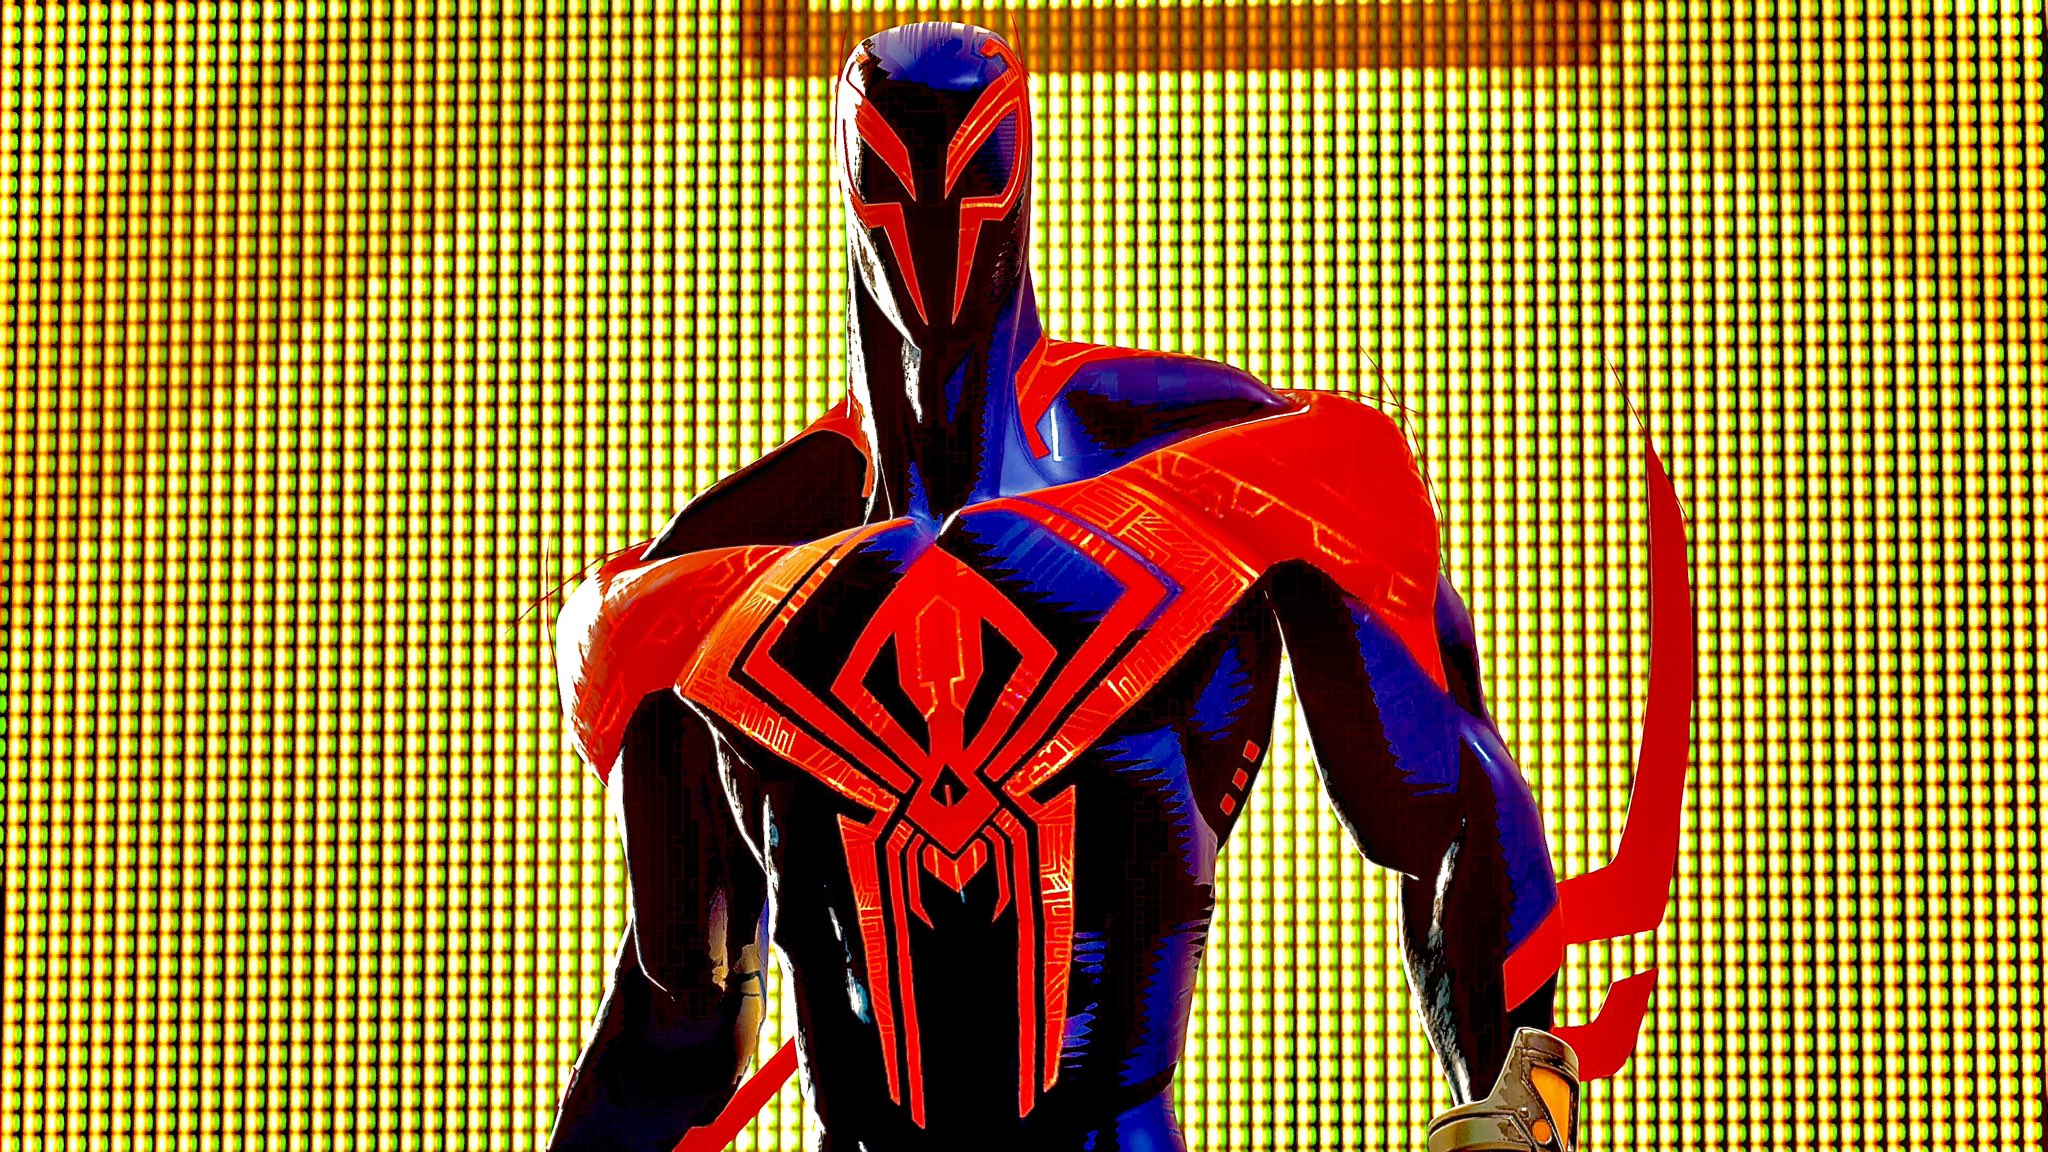 Spider Man 2099 Fortnite Wallpaper